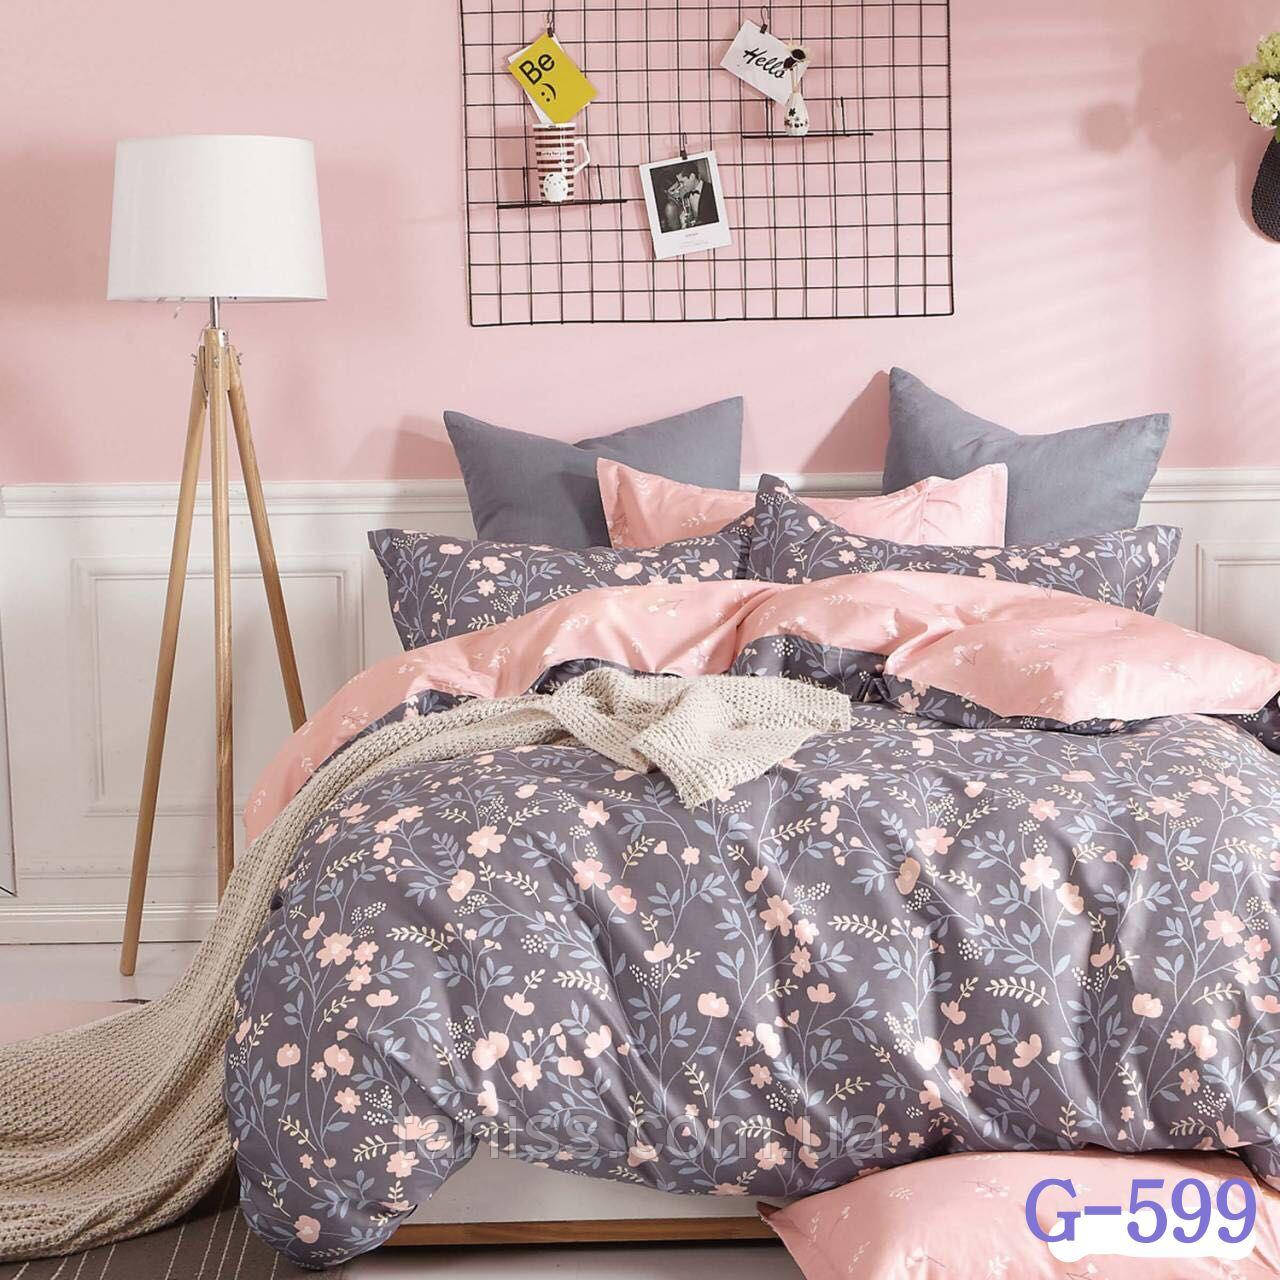 

Полуторный набор постельного белья Бязь "Gold",розовый-серый, полянка (599)